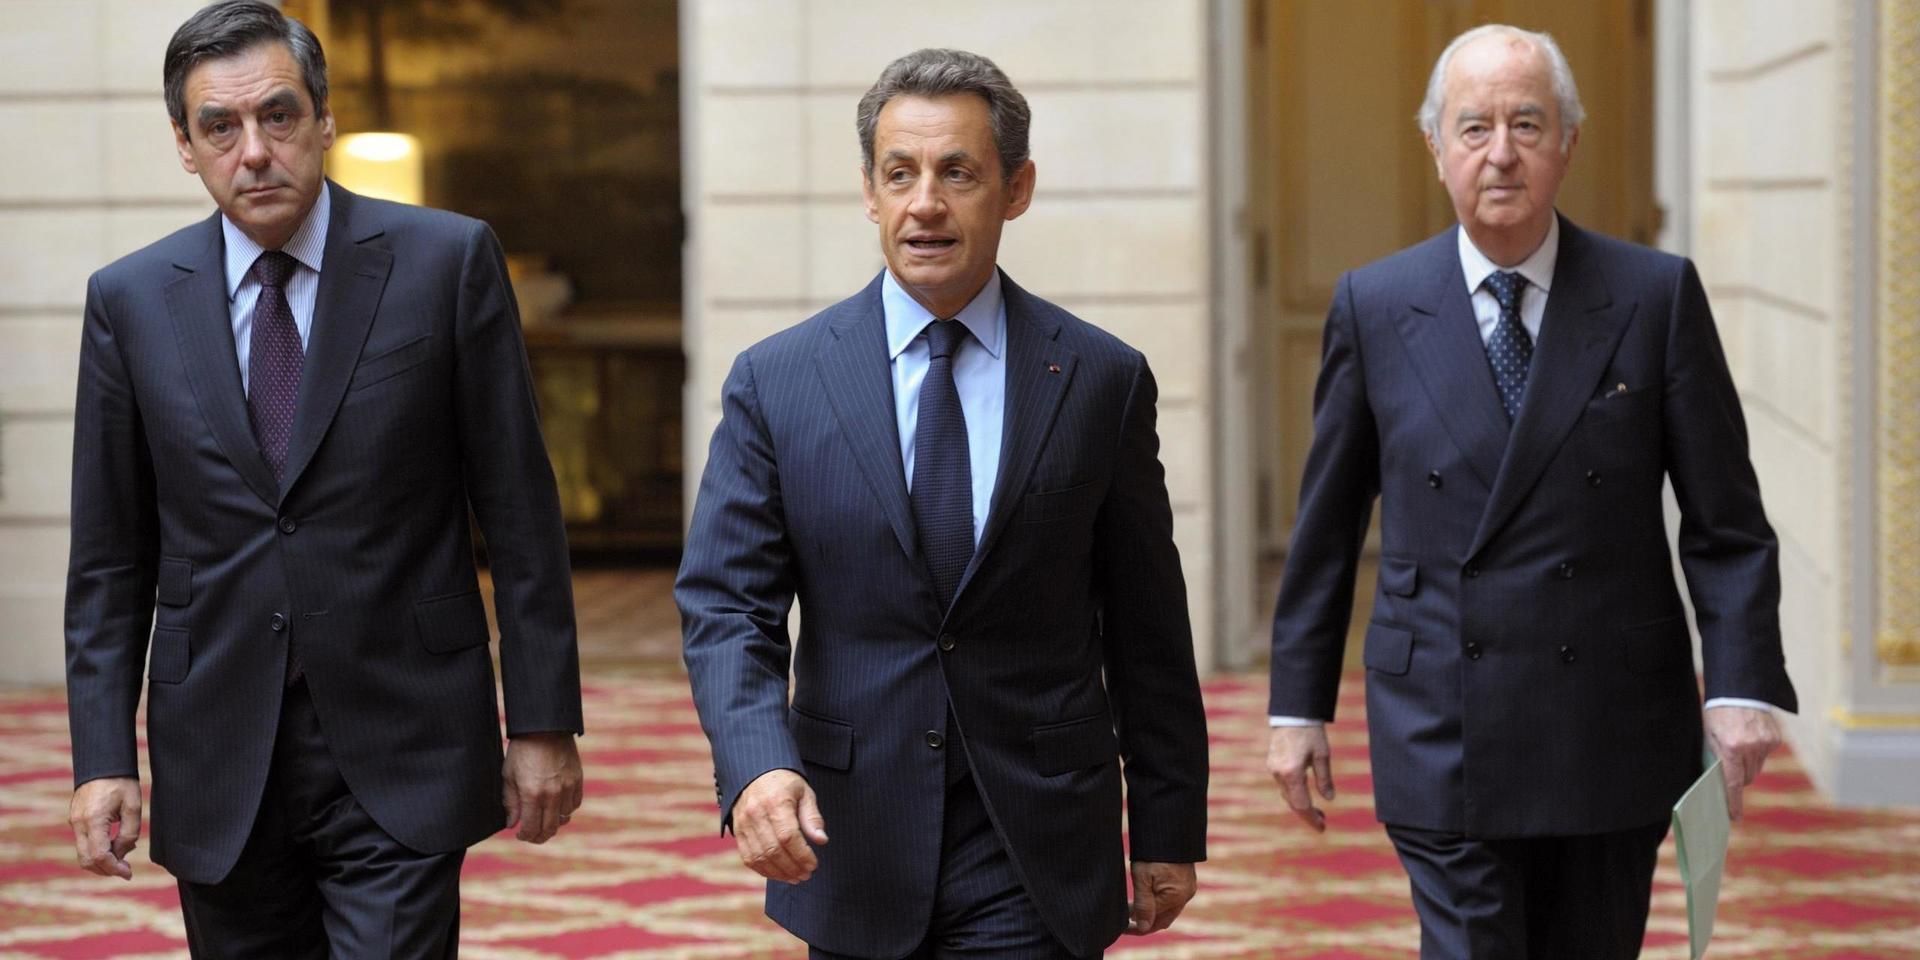 2011 togs denna bild då Frankrikes dåvarande premiärminister François Fillon och president Nicolas Sarkozy deltog i en ceremoni i Élyséepalatset i Paris tillsammans med förre premiärministern Édouard Balladur. Alla tre har sedan dess ställts inför rätta för olika korruptionsanklagelser.